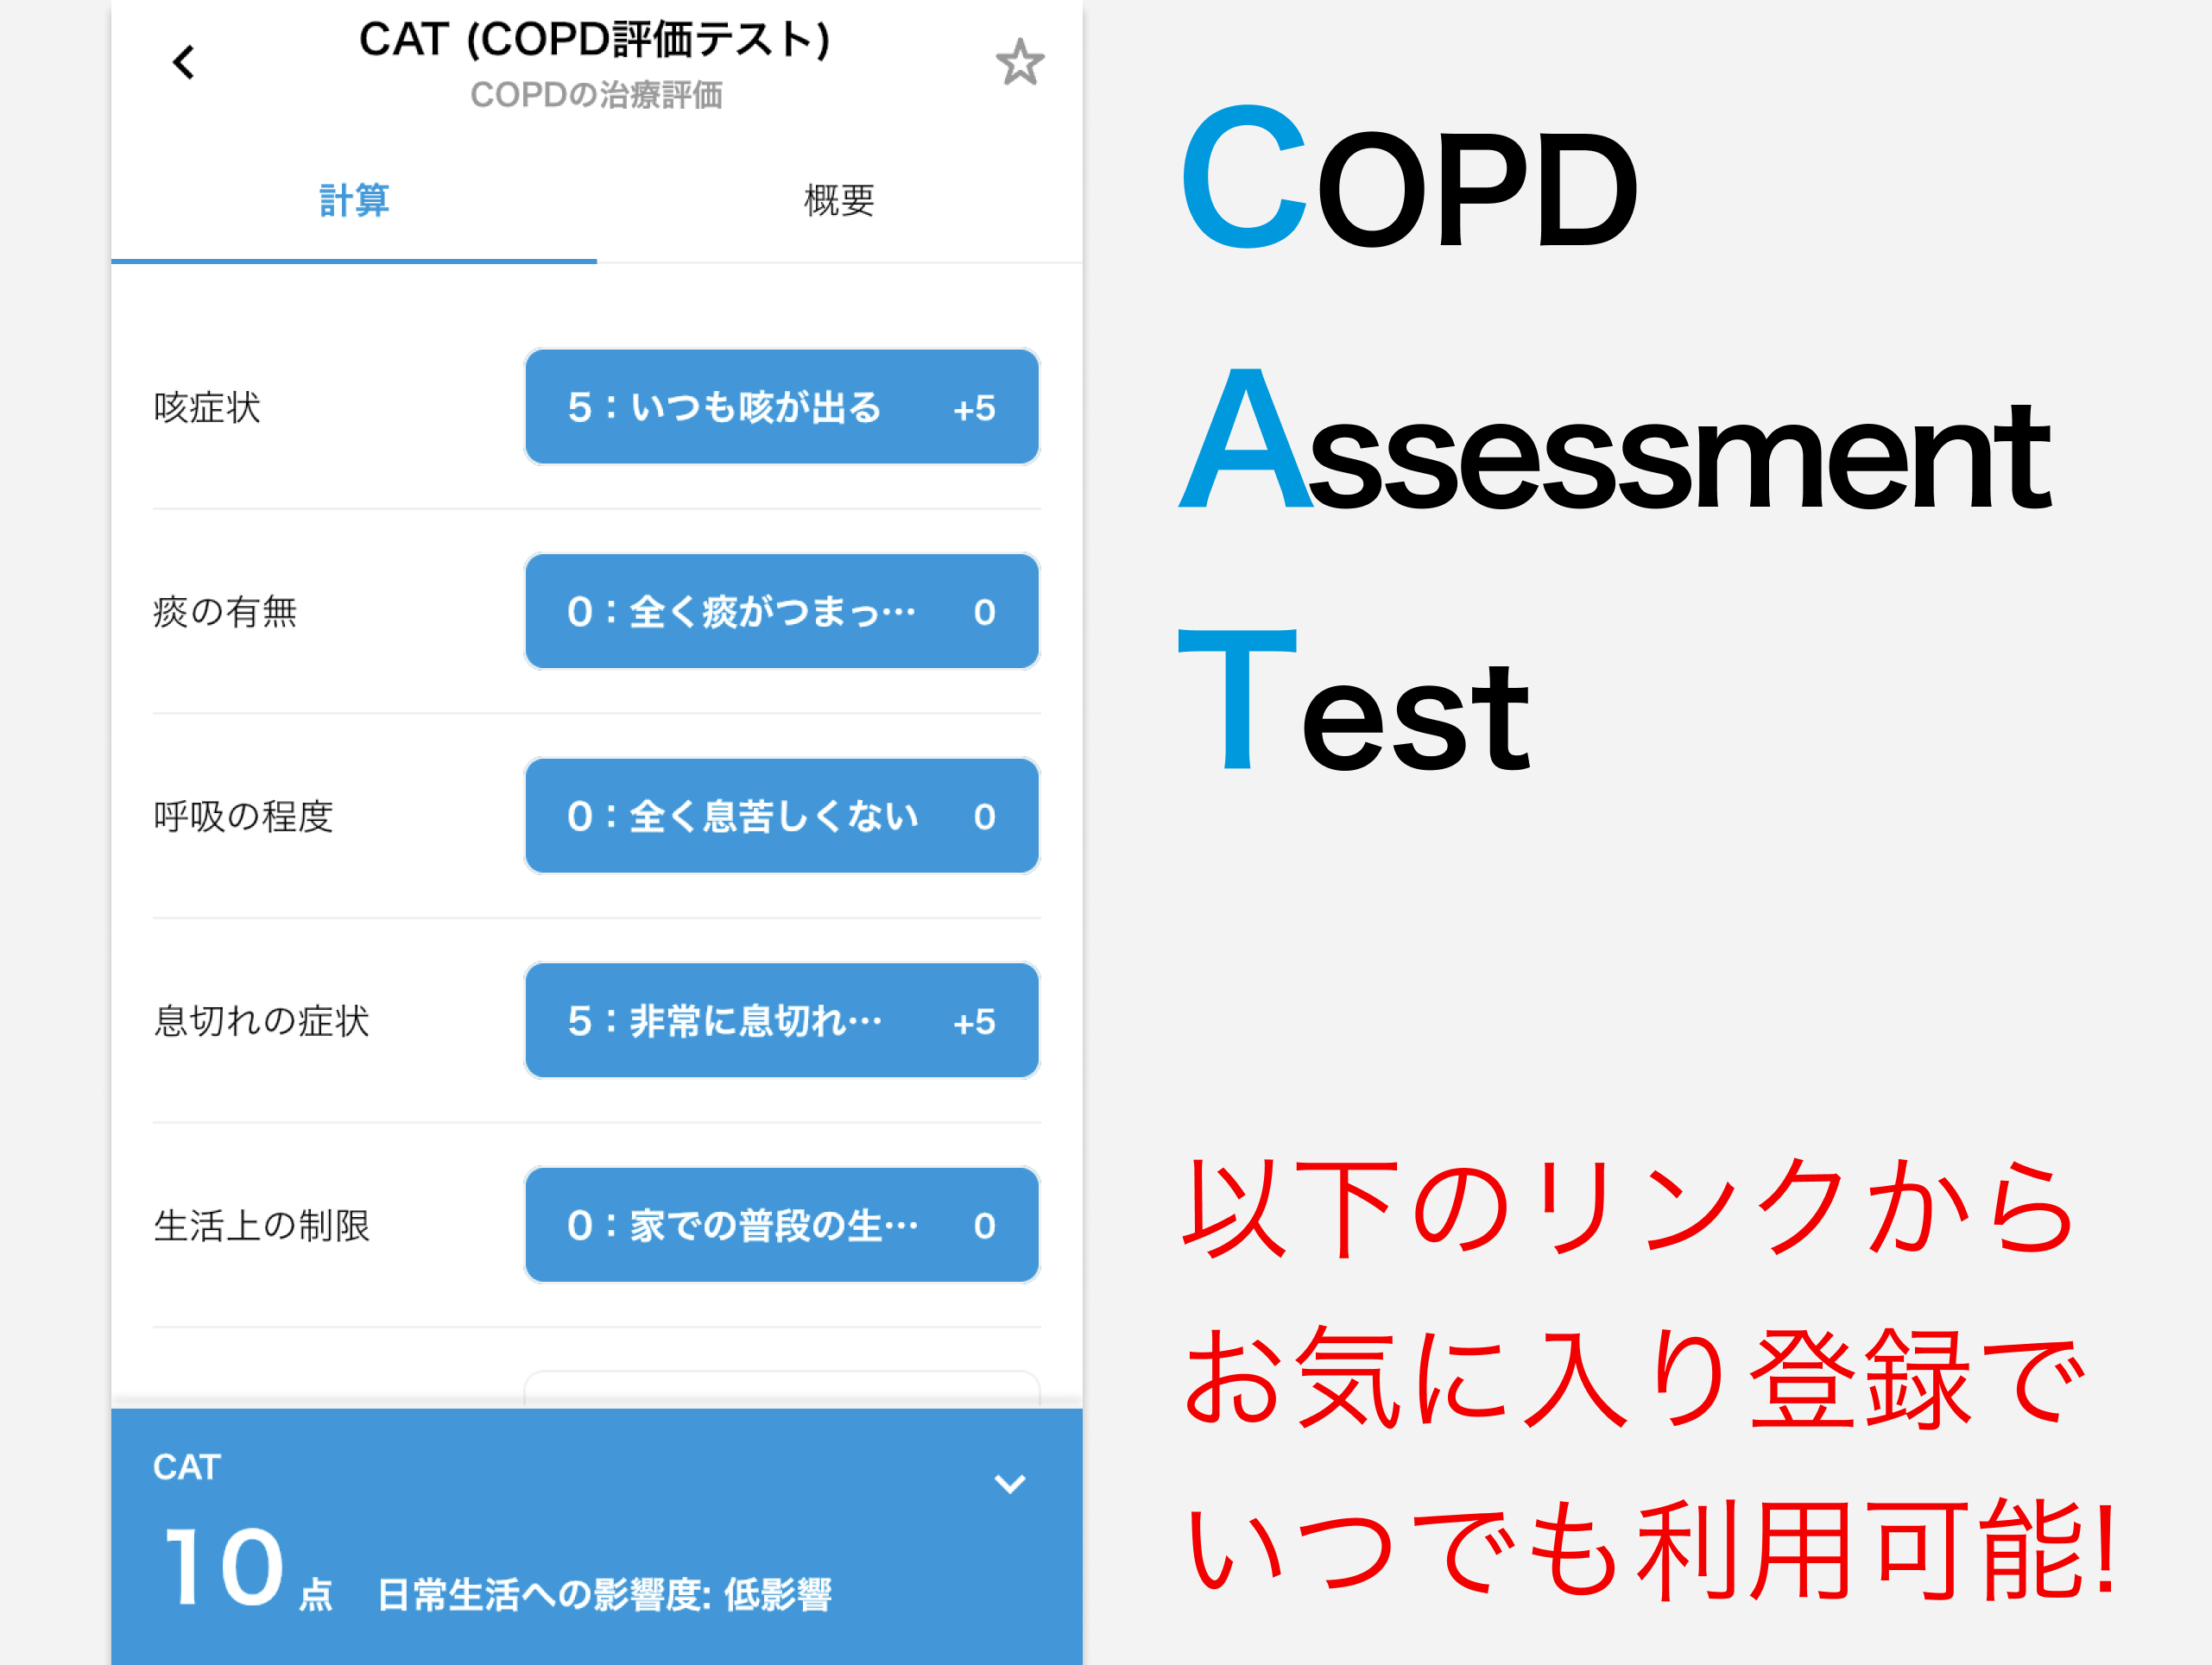 【ツール】CAT (COPD評価テスト) の概要とエビデンスについて